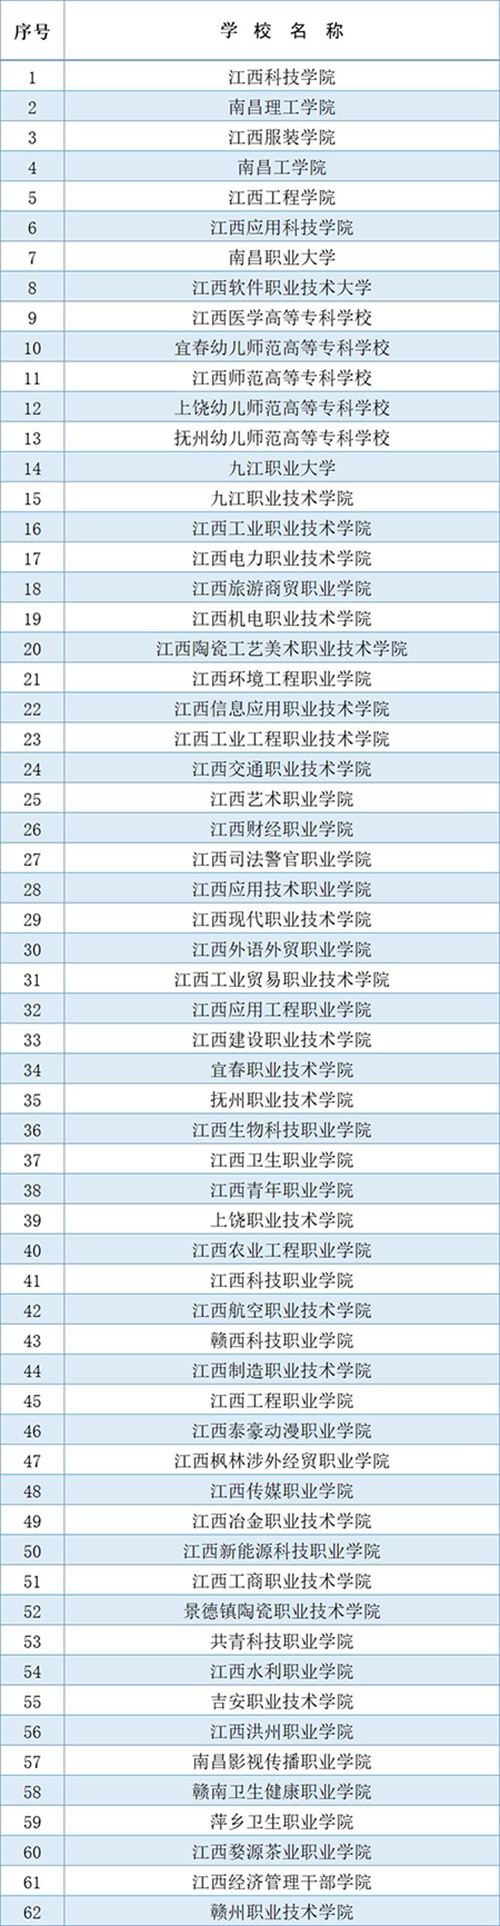 2020年单招学校排名_2020年河南省高职扩招单招院校名单(2)